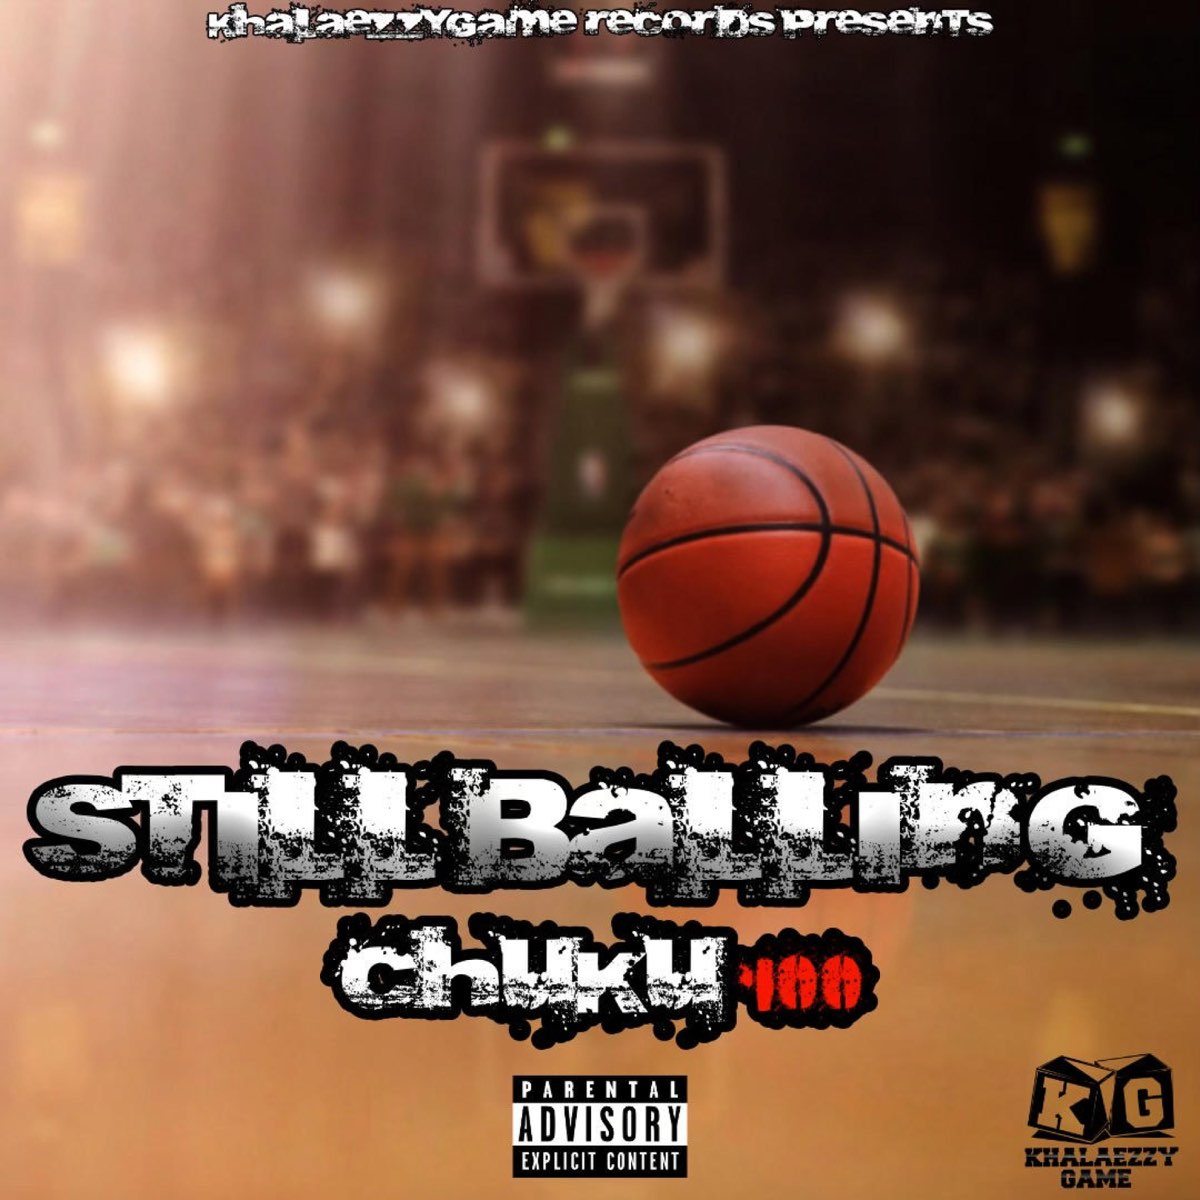 Still Balling - Single by Chuku100 on Apple Music